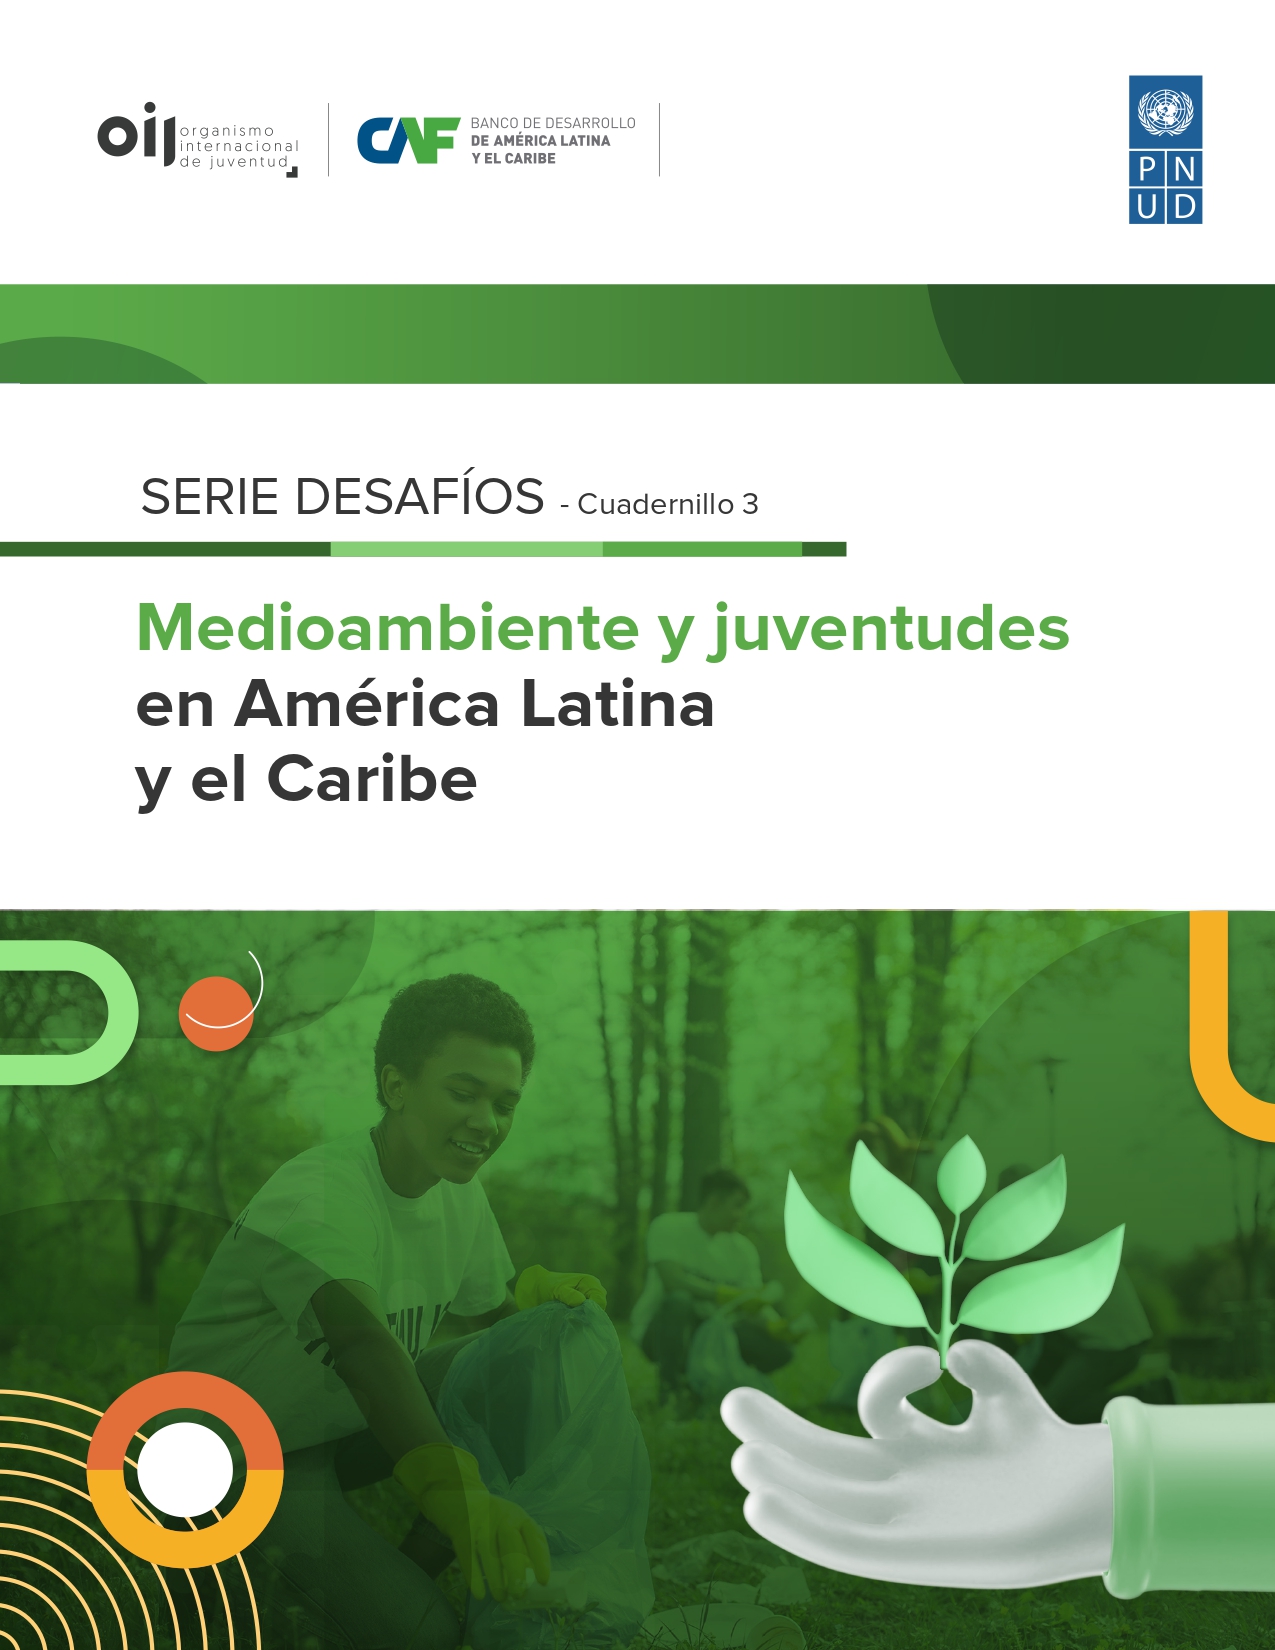 Medioambiente y juventudes en América Latina y el Caribe